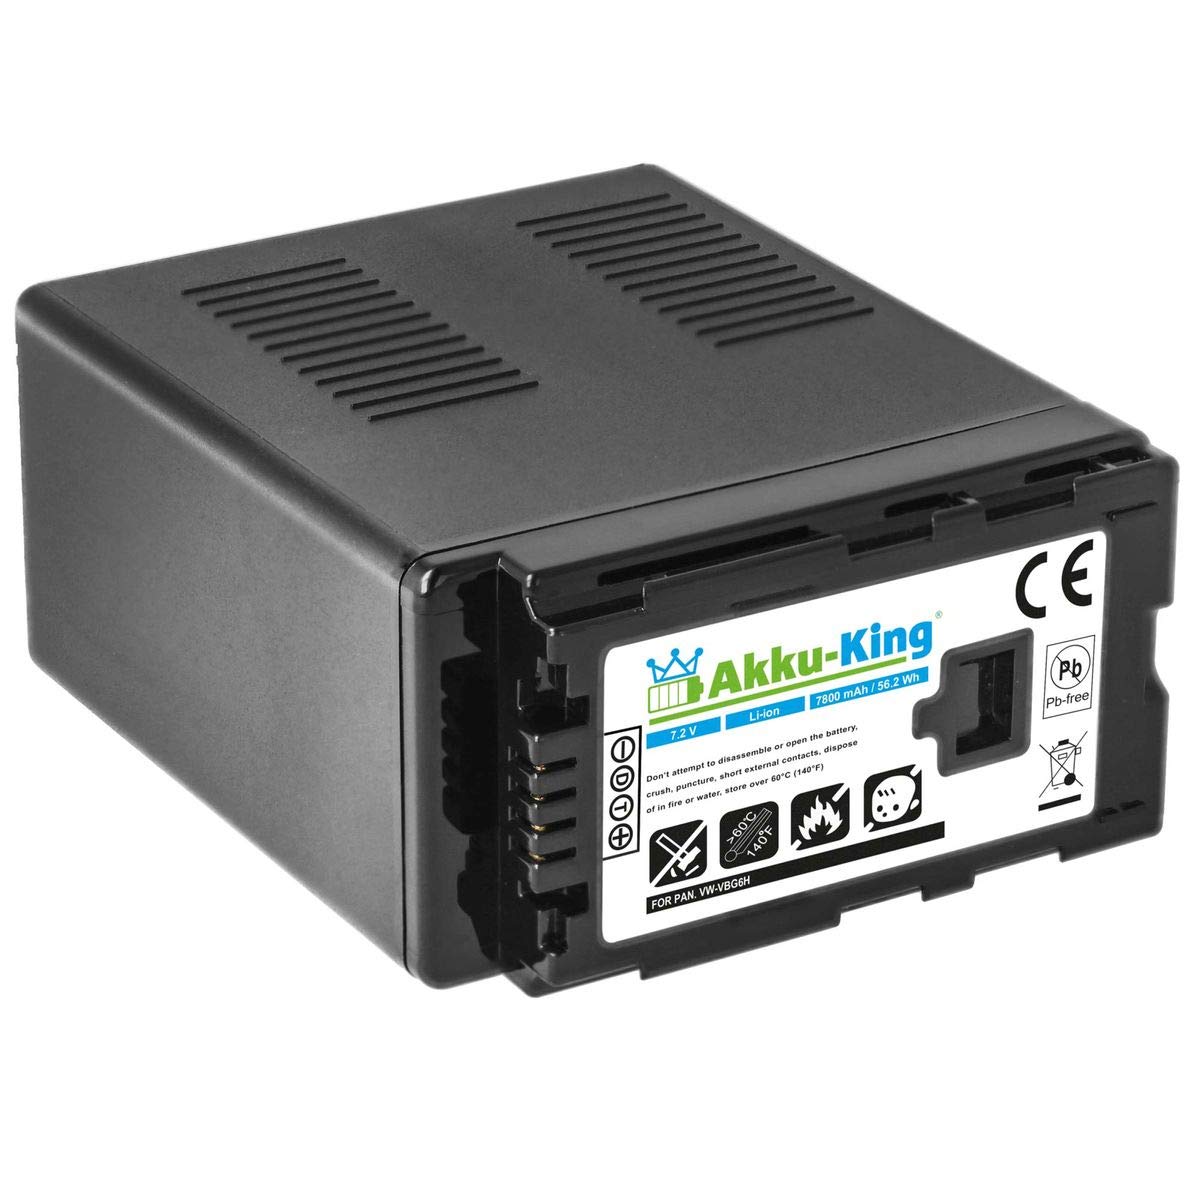 Akku-King Akku kompatibel mit Panasonic VW-VBG6, VW-VBG6GK, VW-VBG6-K, VW-VBG6PPK - Li-Ion 7800mAh - für AG-AC130, AG-HMC150, HDC-DX1, HDC-MDH1GK, HDC-SD1